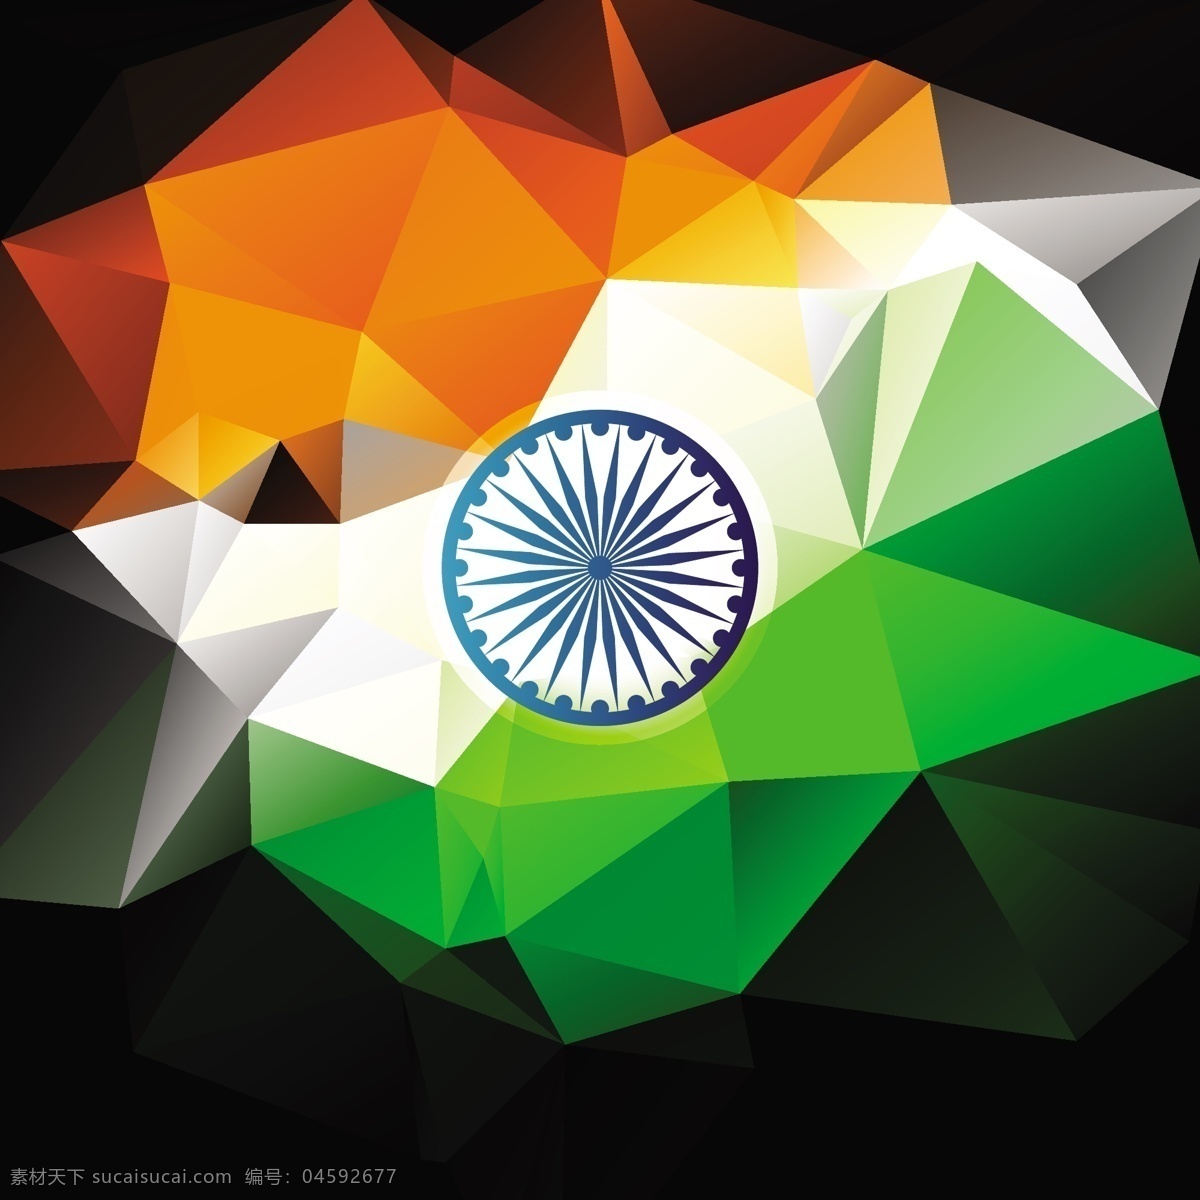 印度 国旗 三 色 多边形 背景 抽象 旗帜 节日 车轮 和平 印度国旗 独立日 国家 自由 一天 政府 波浪 爱国 一月 黑色